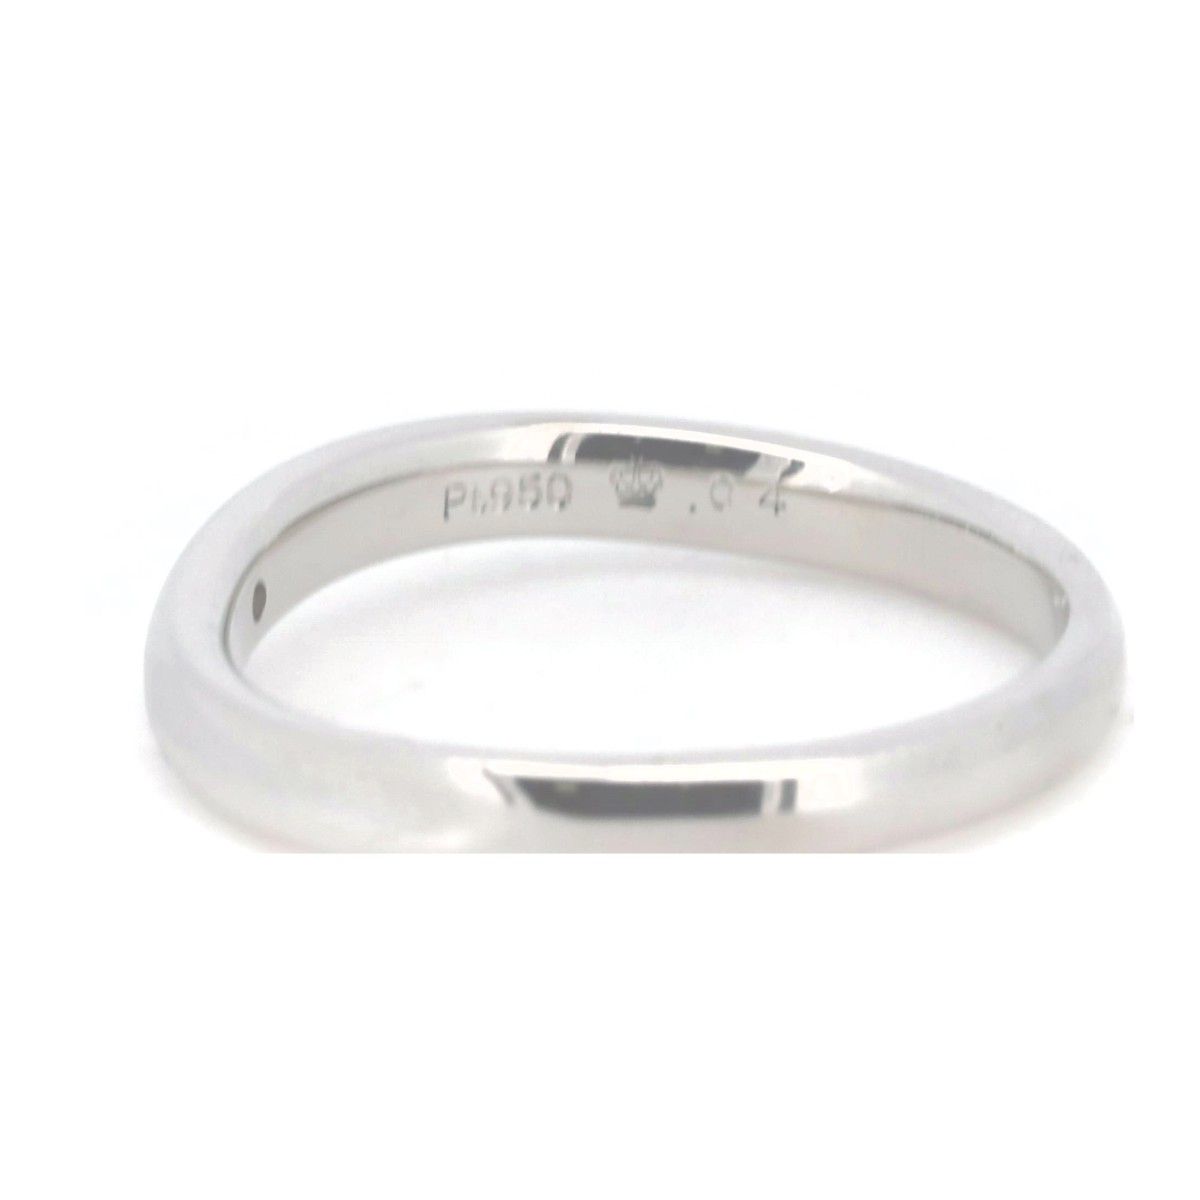 ロイヤルアッシャー ダイヤモンド リング 指輪 8号 0.04ct PT950(プラチナ) 質屋出品 - メルカリ